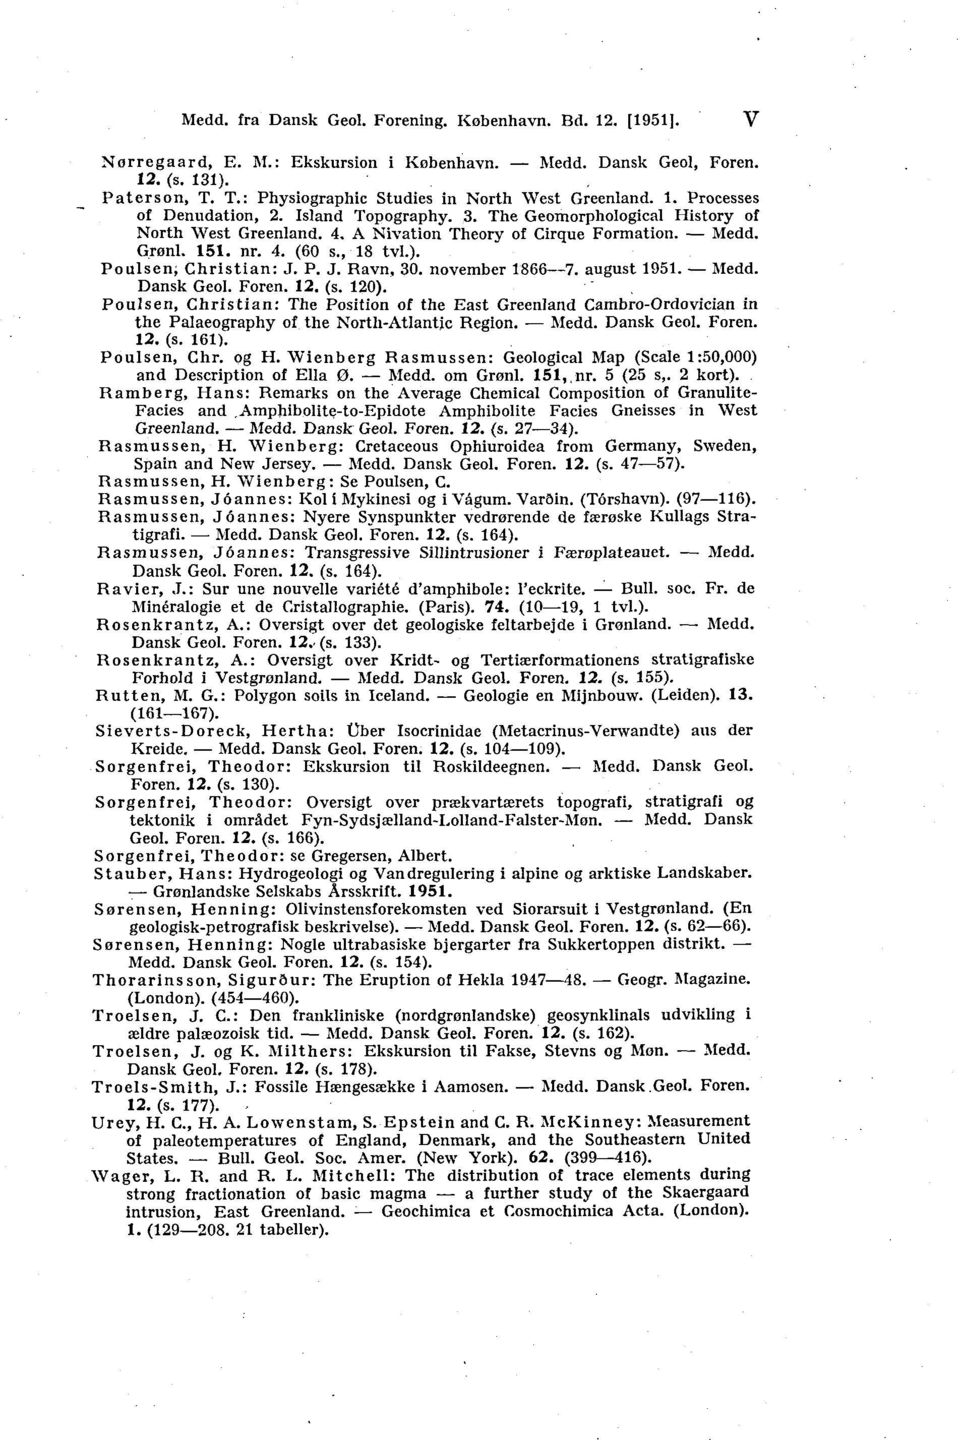 Medd. Grønl. 151. nr. 4. (60 s., 18 tvl.). Poulsen; Christian: J. P. J. Ravn, 30. november 1866 7. august 1951. Medd. Dansk Geol. Foren. 12. (s. 120).